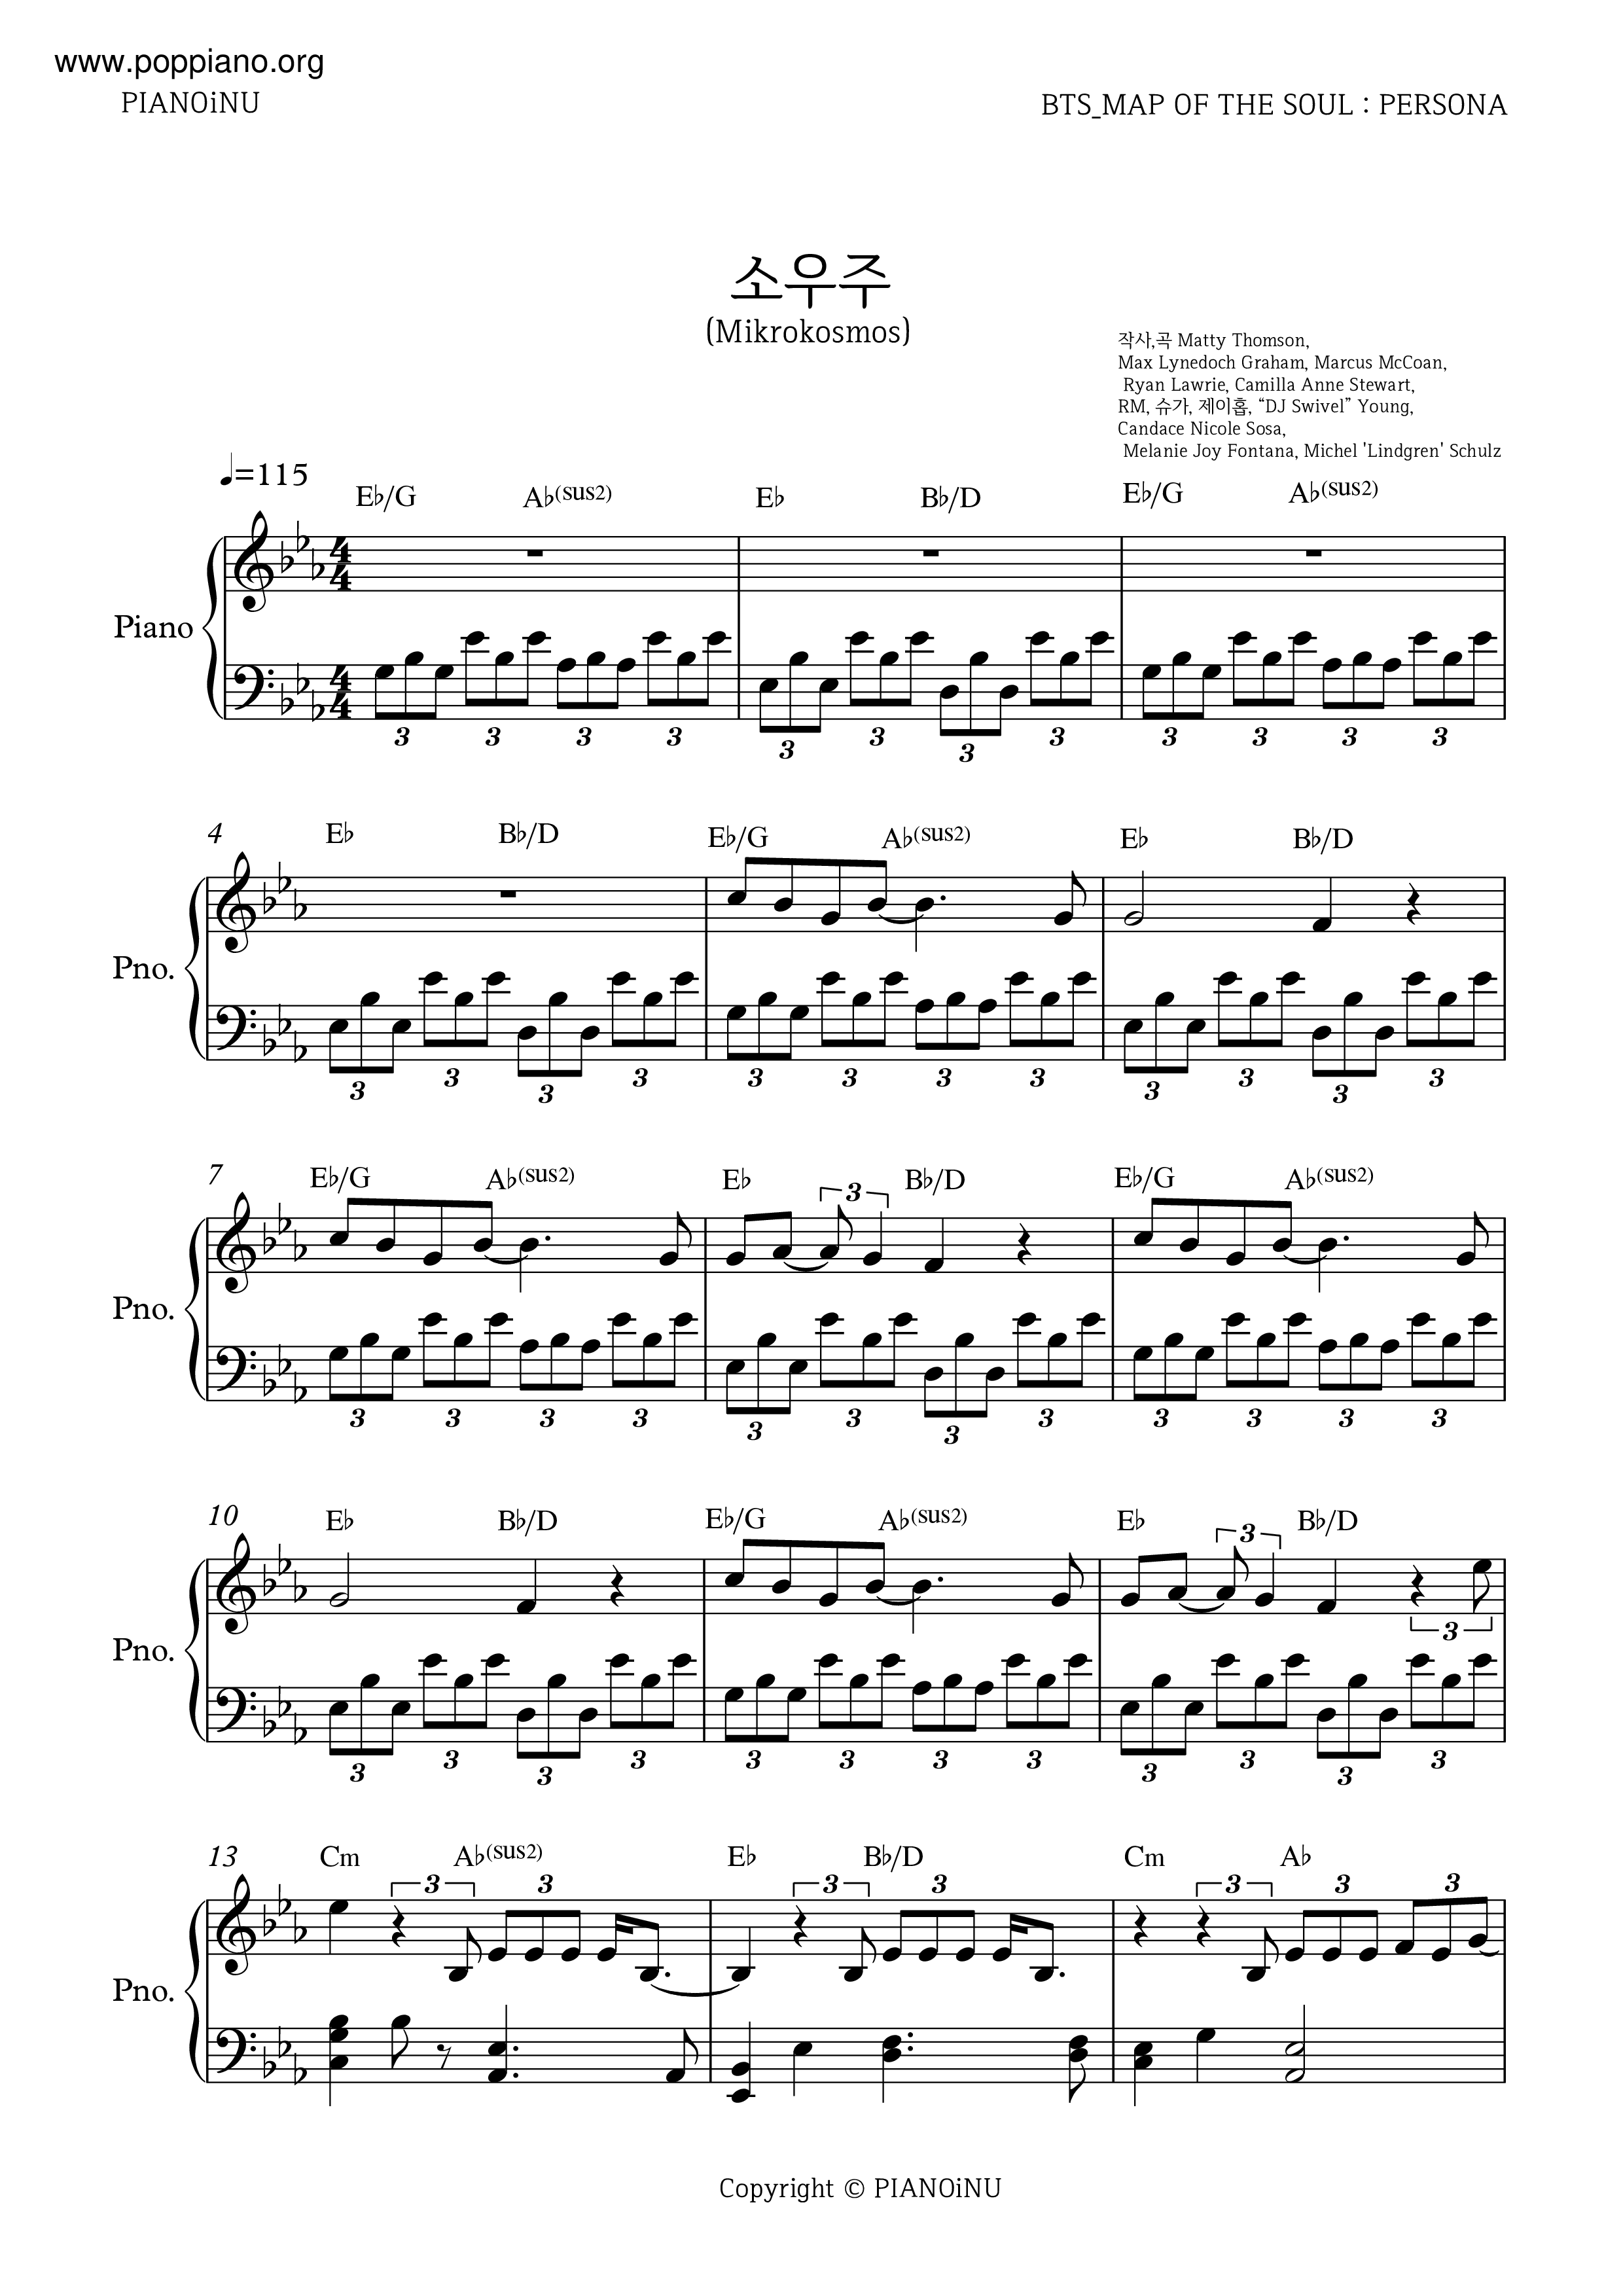 Mikrokosmosピアノ譜